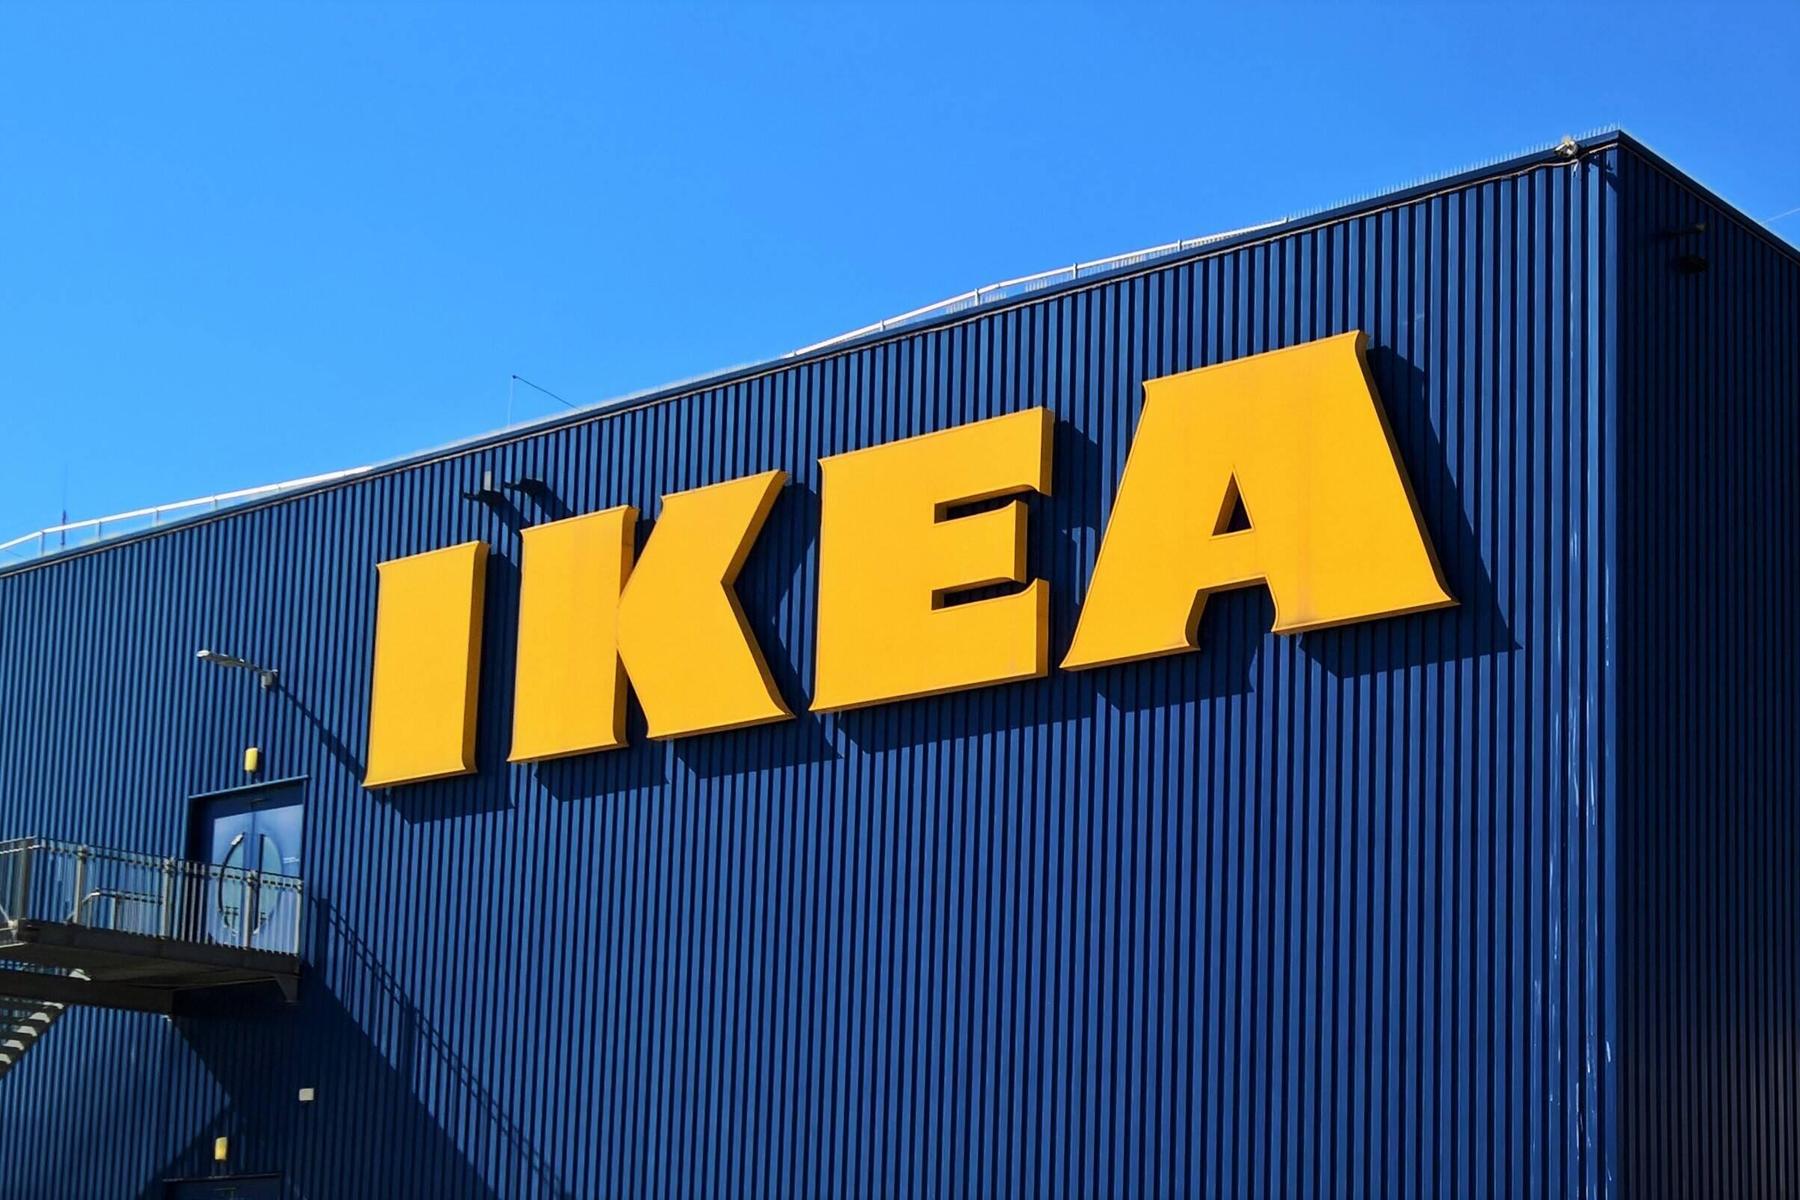  Ikea sucht Mitarbeiter für digitales Möbelhaus in Videospiel Roblox 